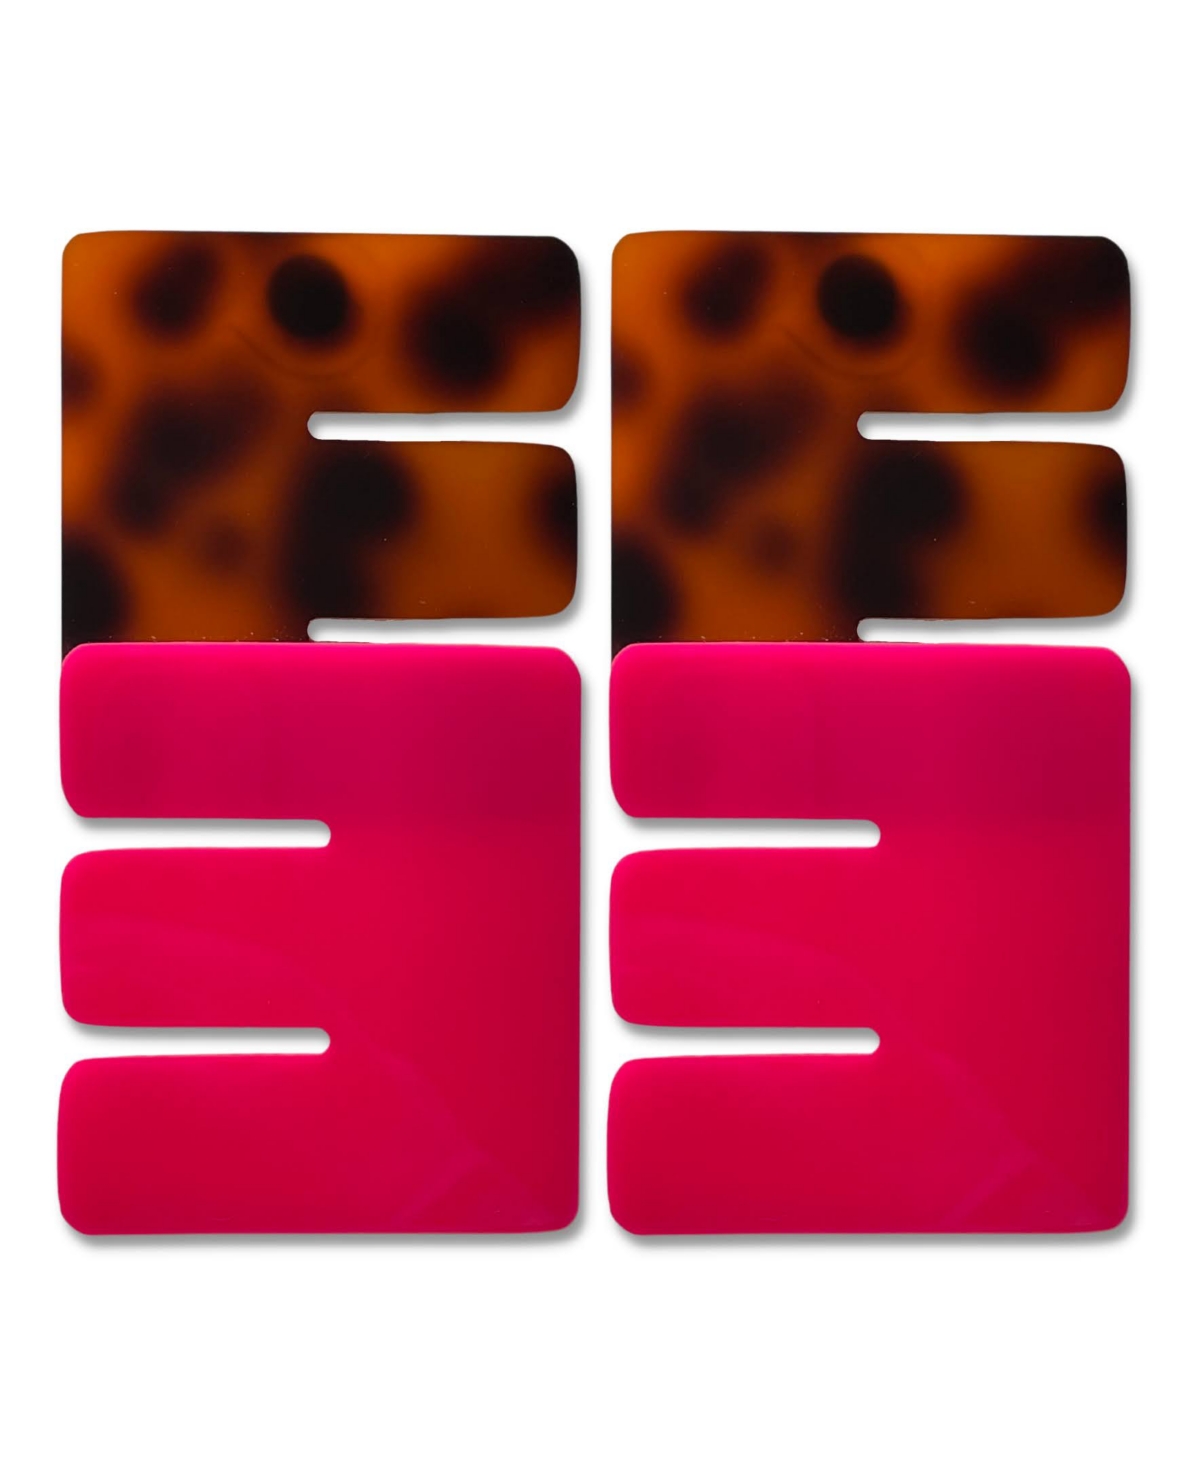 Swanky Designs Double E Drop Earrings In Pink